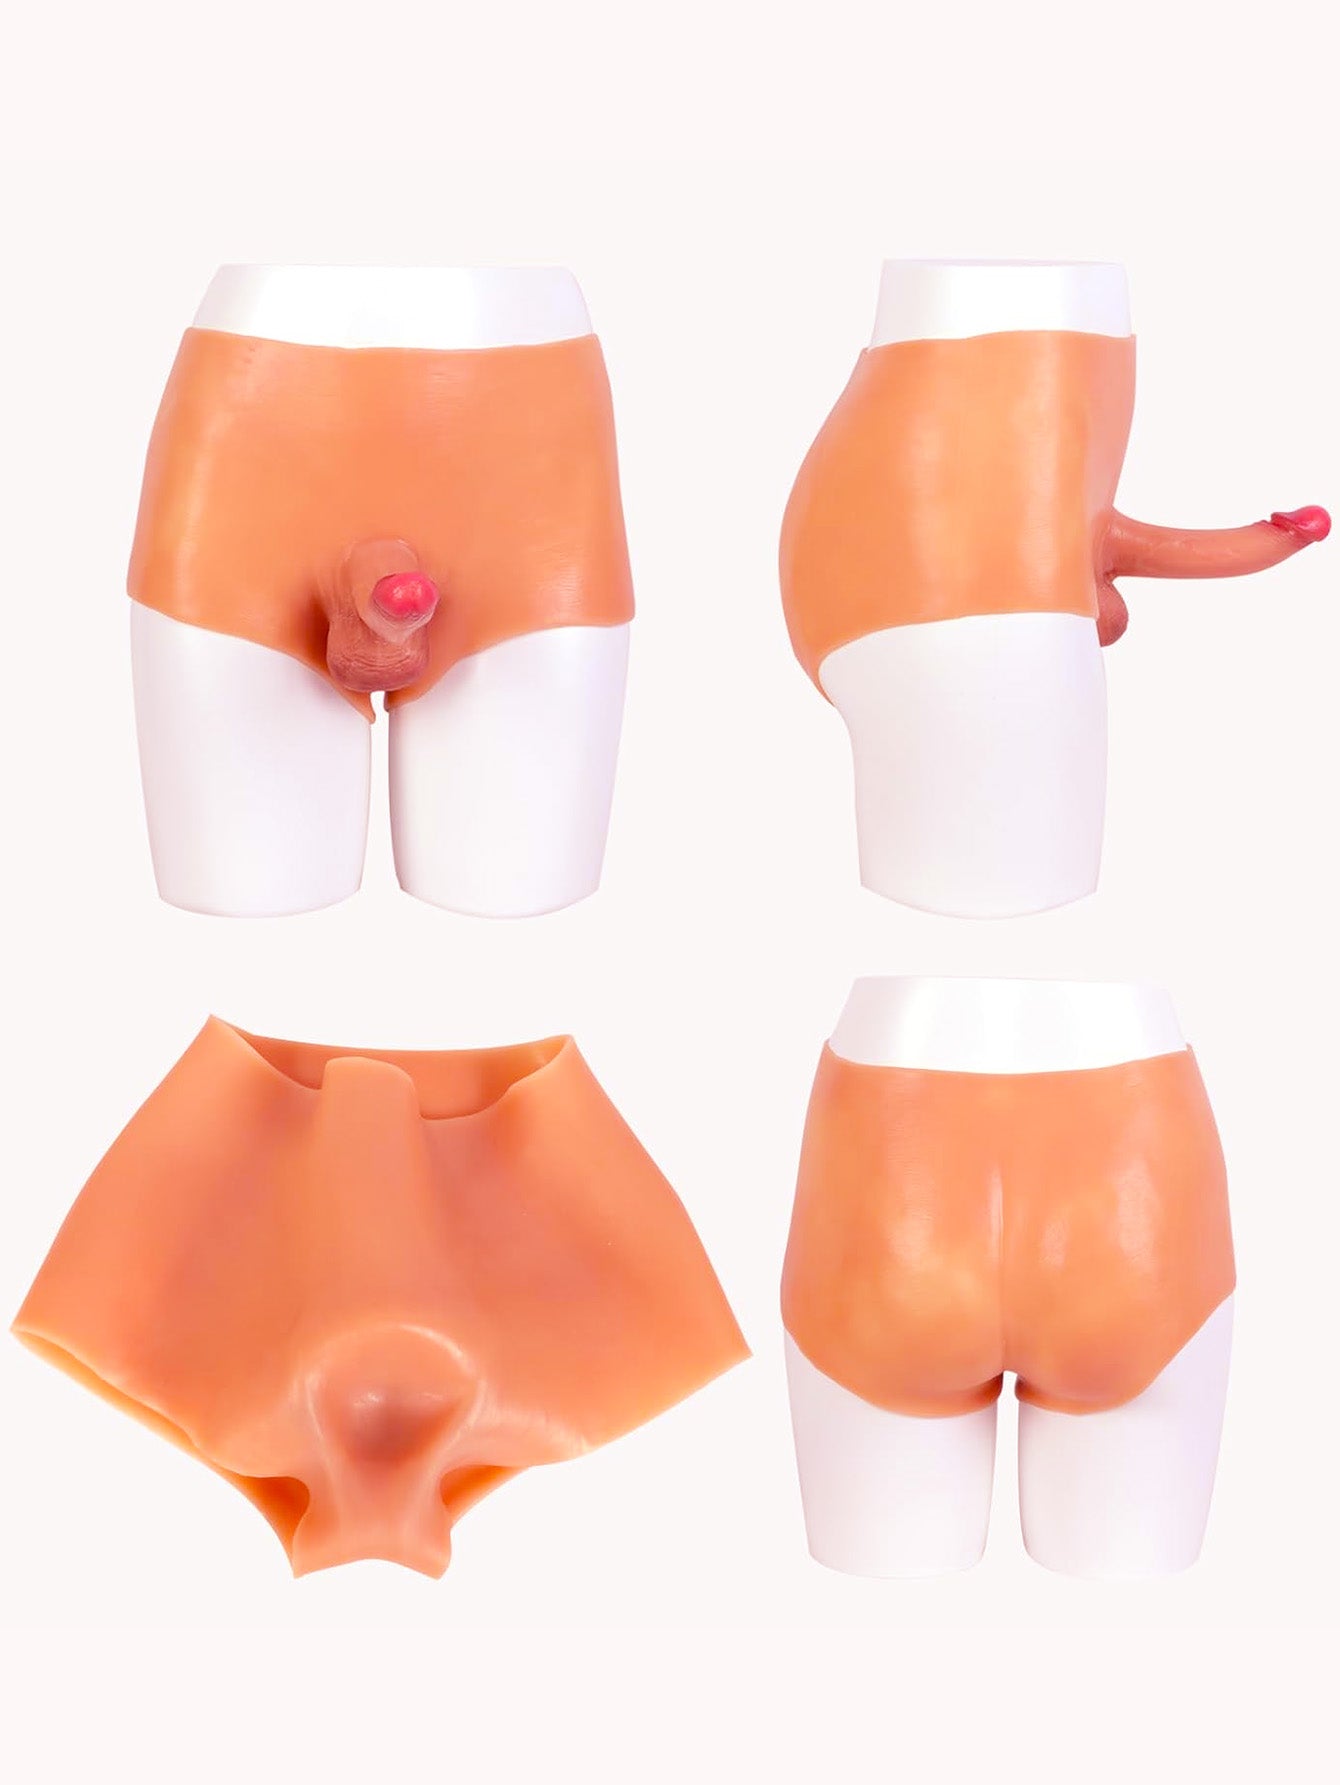 Umschnalldildo-Hose mit realistischem Dildo – tragbares Sexspielzeug aus Silikon für Paare als Geschenke für Lesben